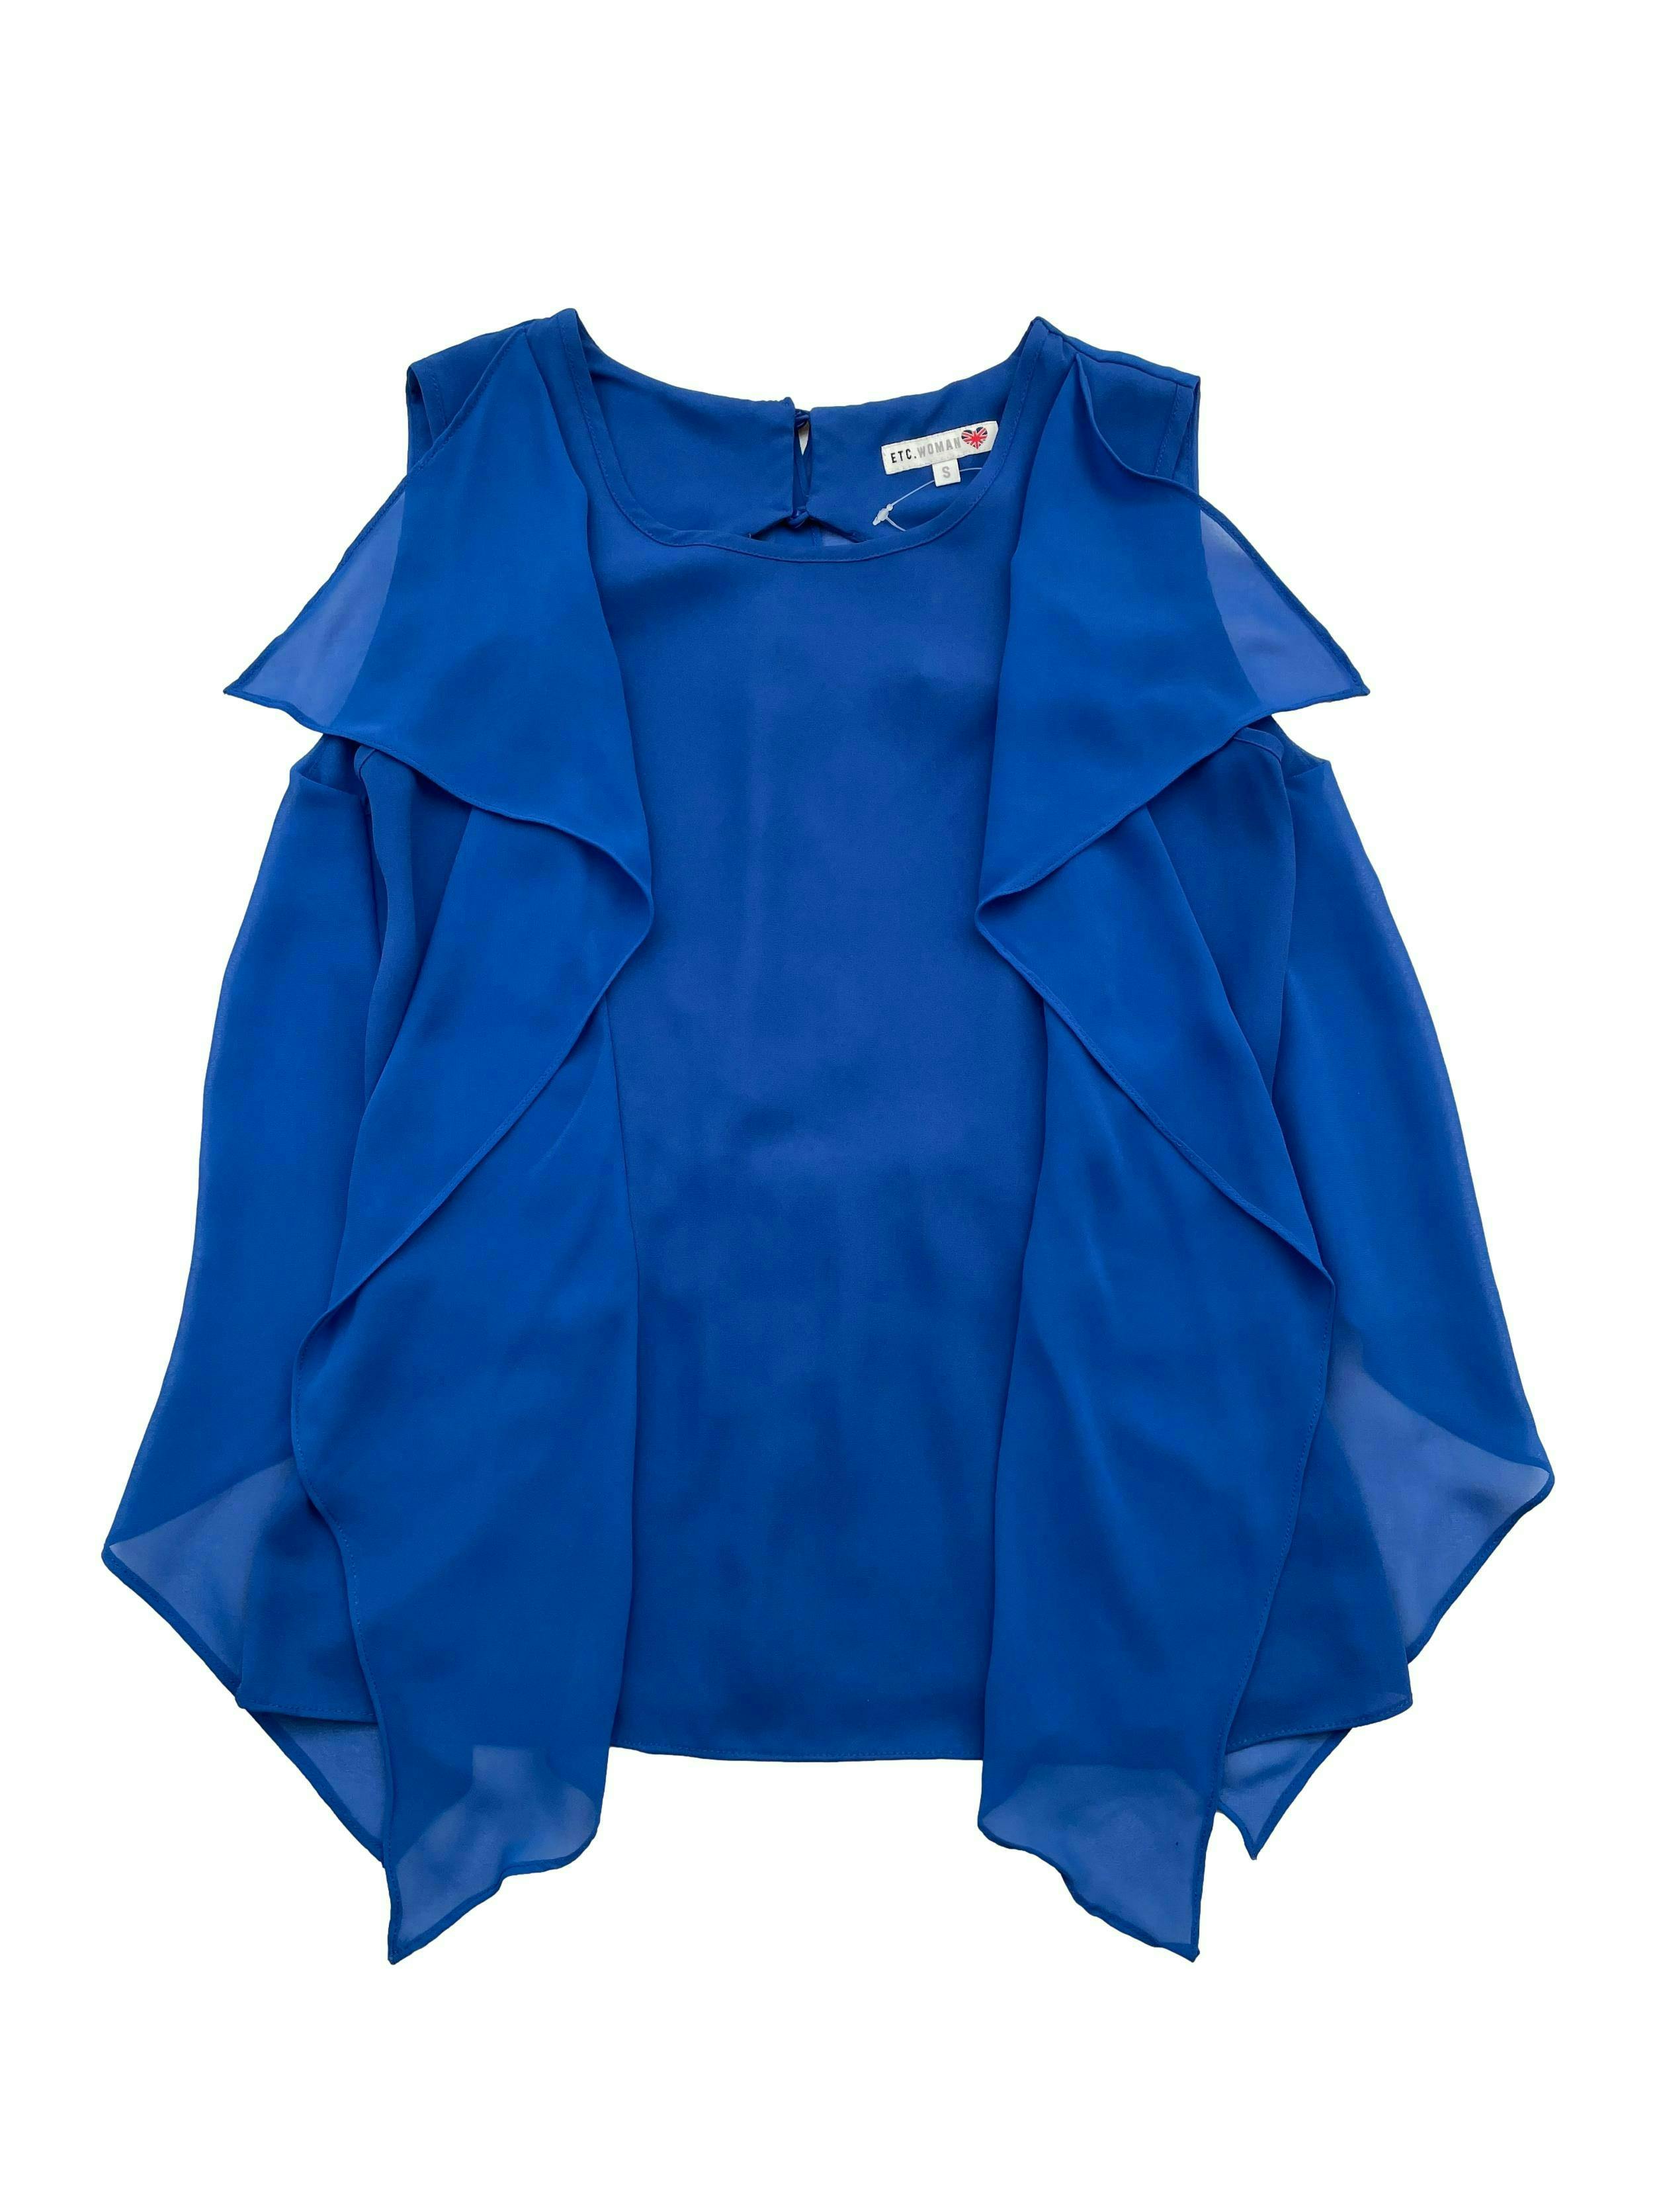 Blusa Etc Women de gasa azul, escote en la espalda, botones en el cuello, volantes. Busto 94cm Largo 60cm